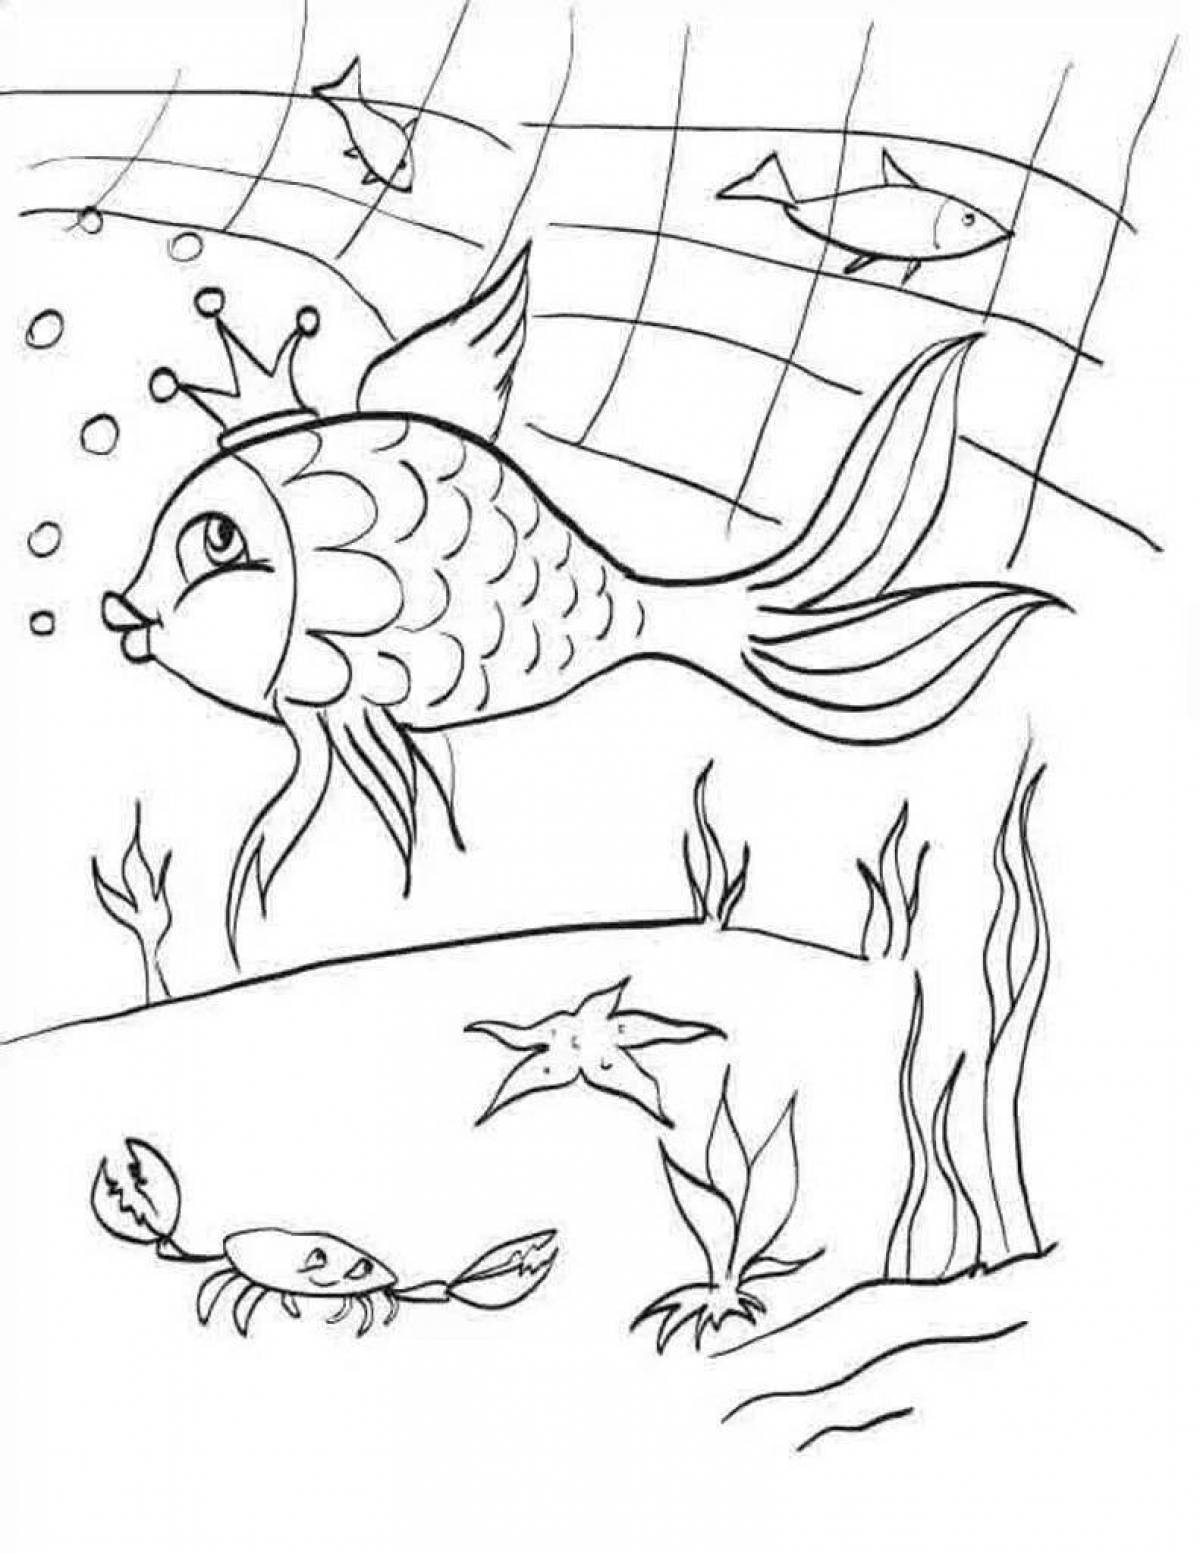 Увлекательный рисунок золотой рыбки